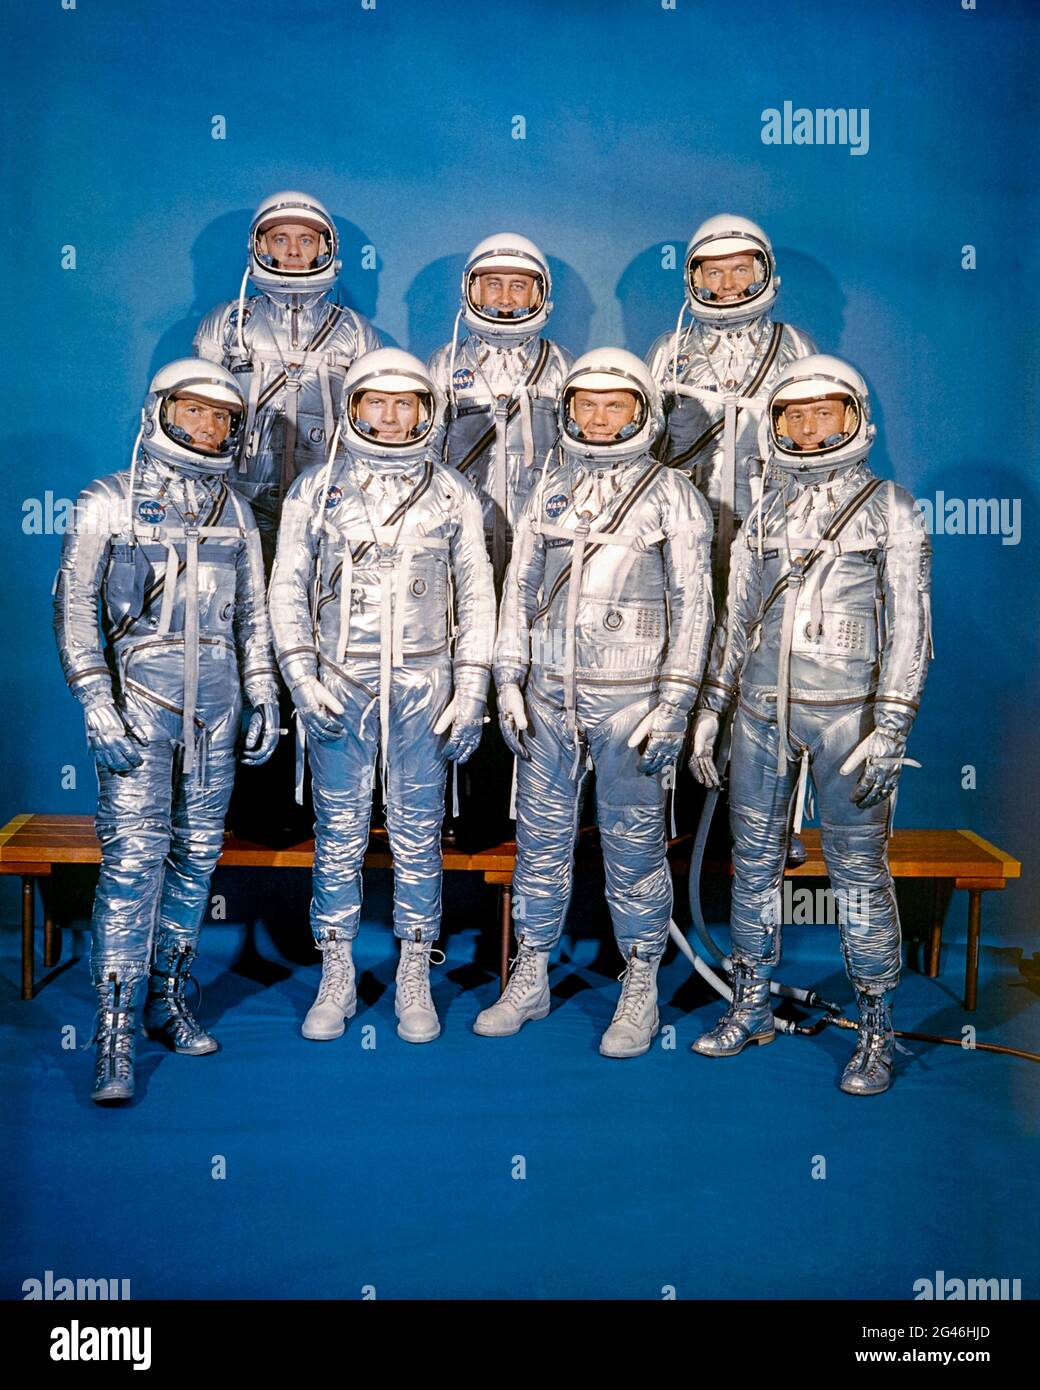 Los Siete de Mercurio, también conocidos como los Siete Originales, fueron los astronautas americanos Scott Carpenter, Gordon Cooper, John Glenn, Gus Grissom, Wally Schirra, Alan Shepard y Deke Slayton se mostraron fotografiados el 17 de marzo de 1960. Foto de stock